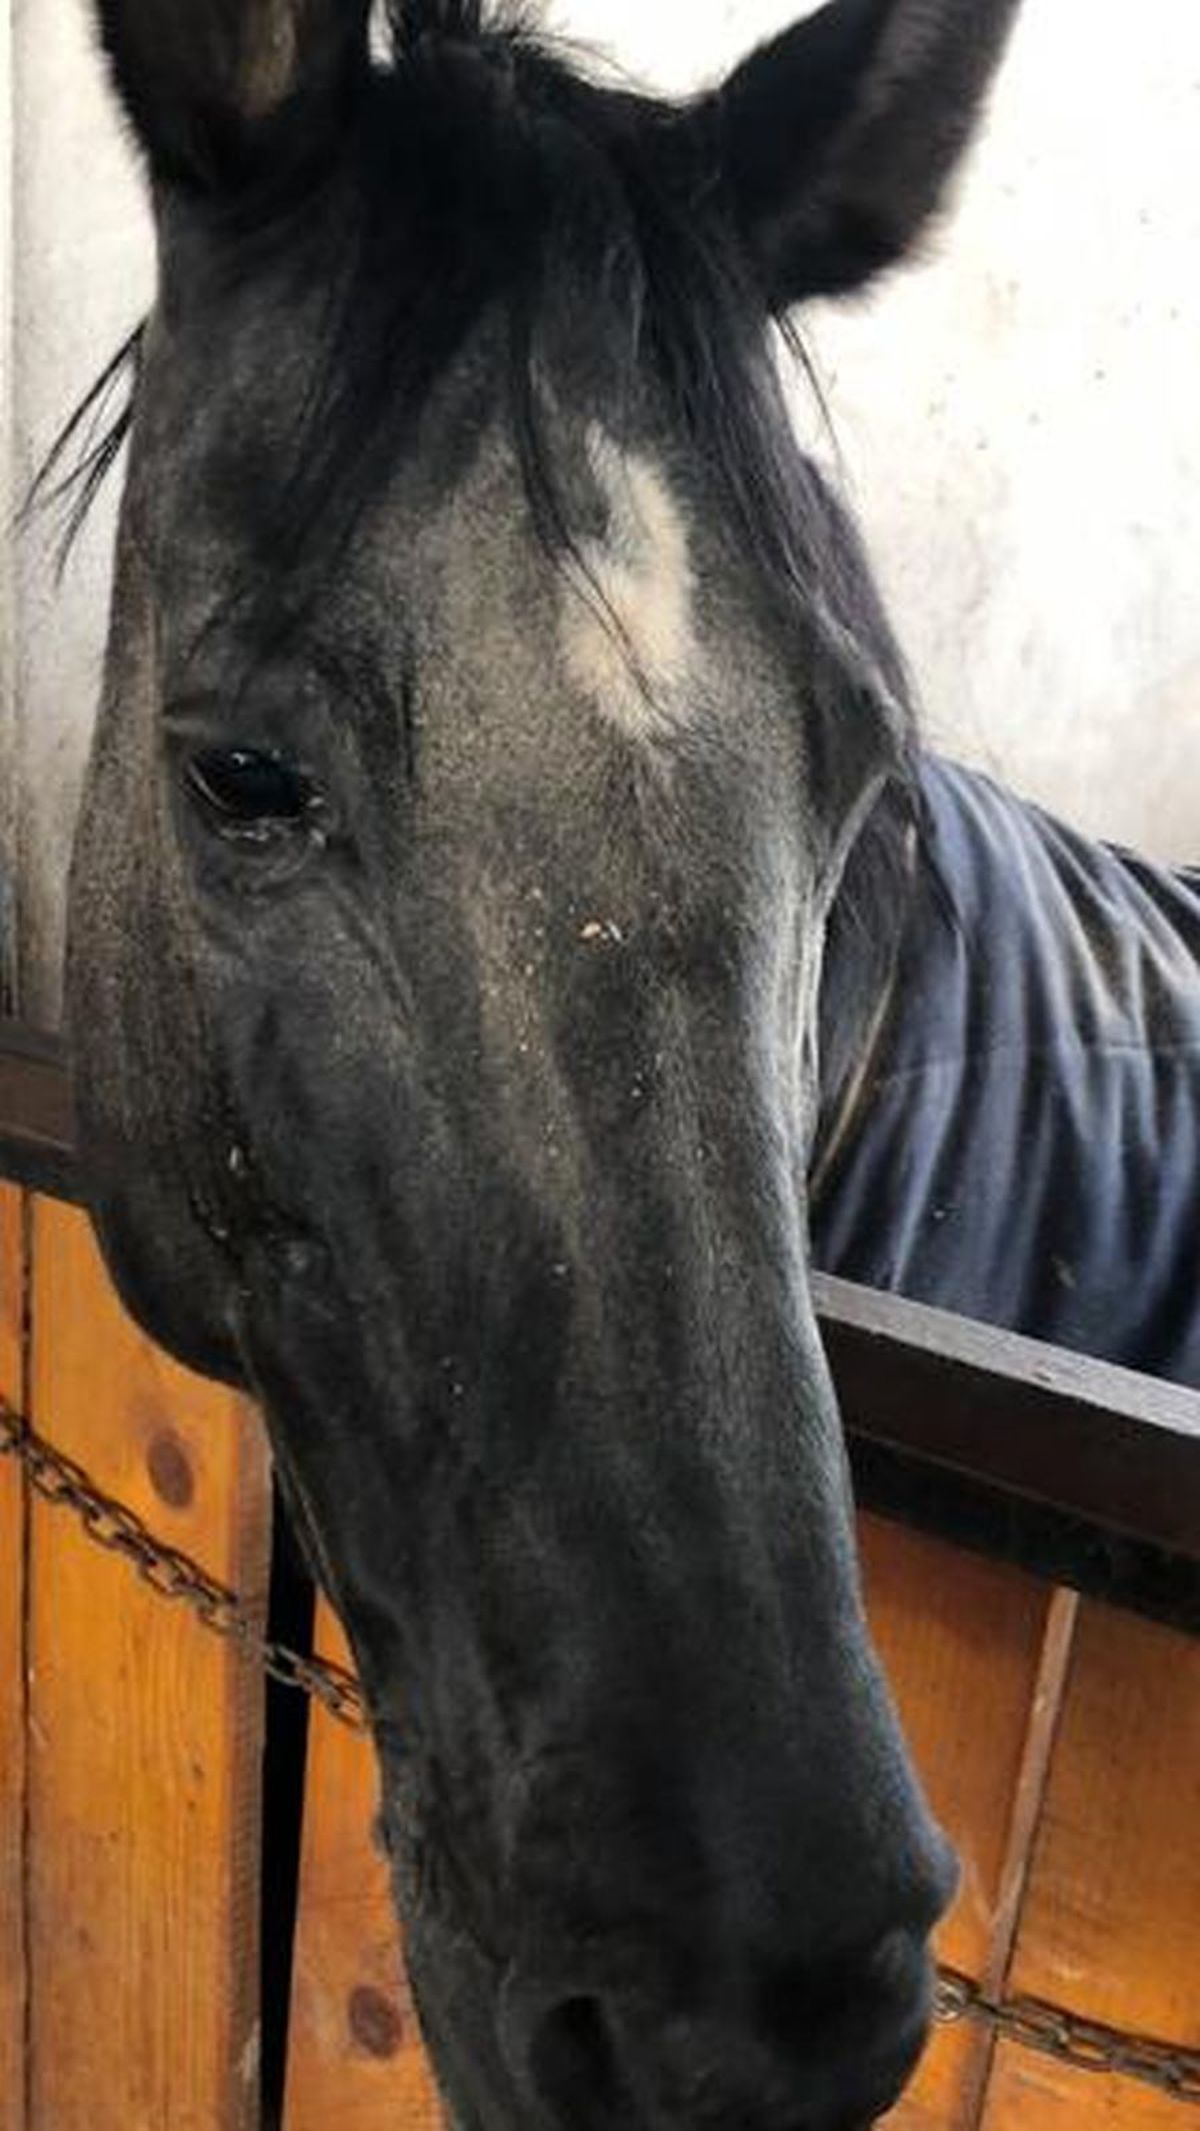 Siker, calul fost multiplu campion național și balcanic, ținut de CSA Steaua în condiții improprii la o bază hipică privată